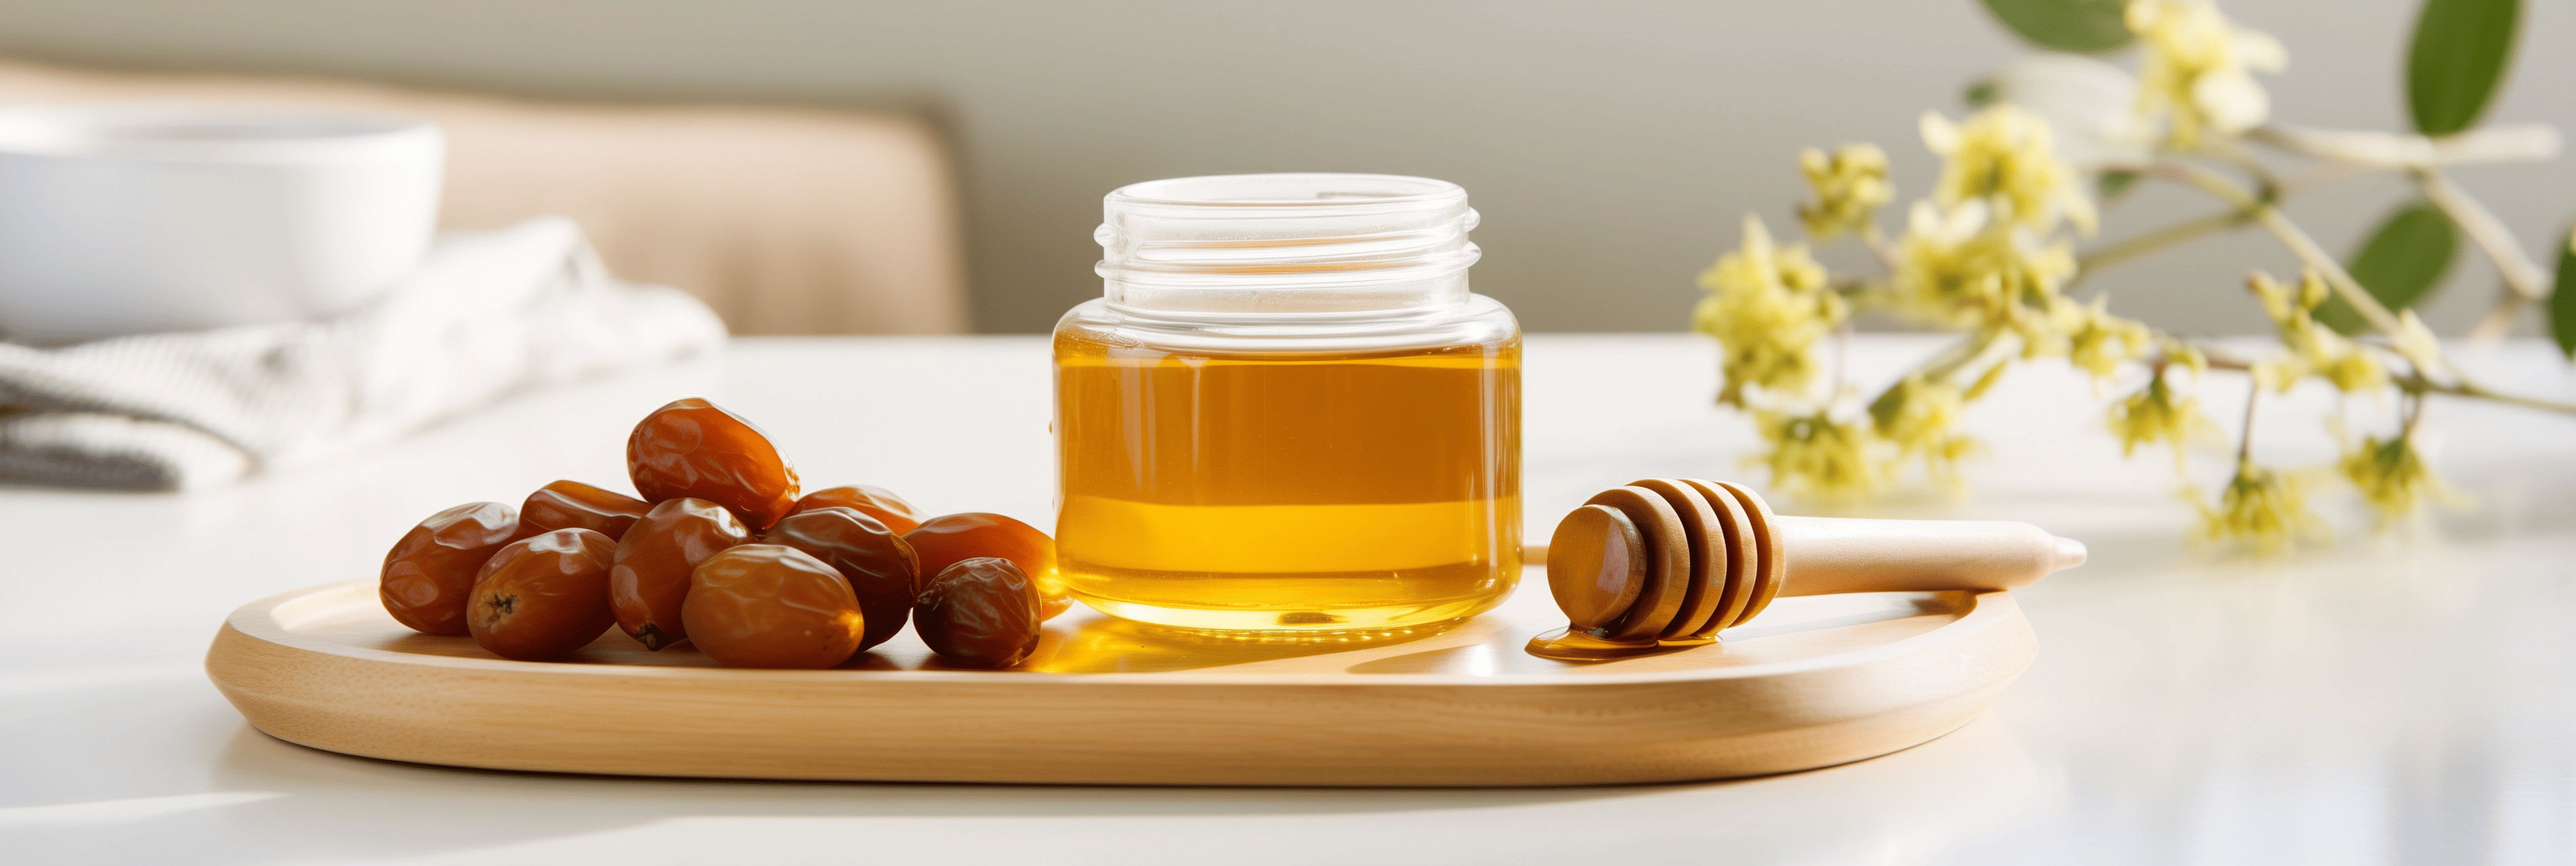 Welche Eigenschaften hat der Honig der Jujube?